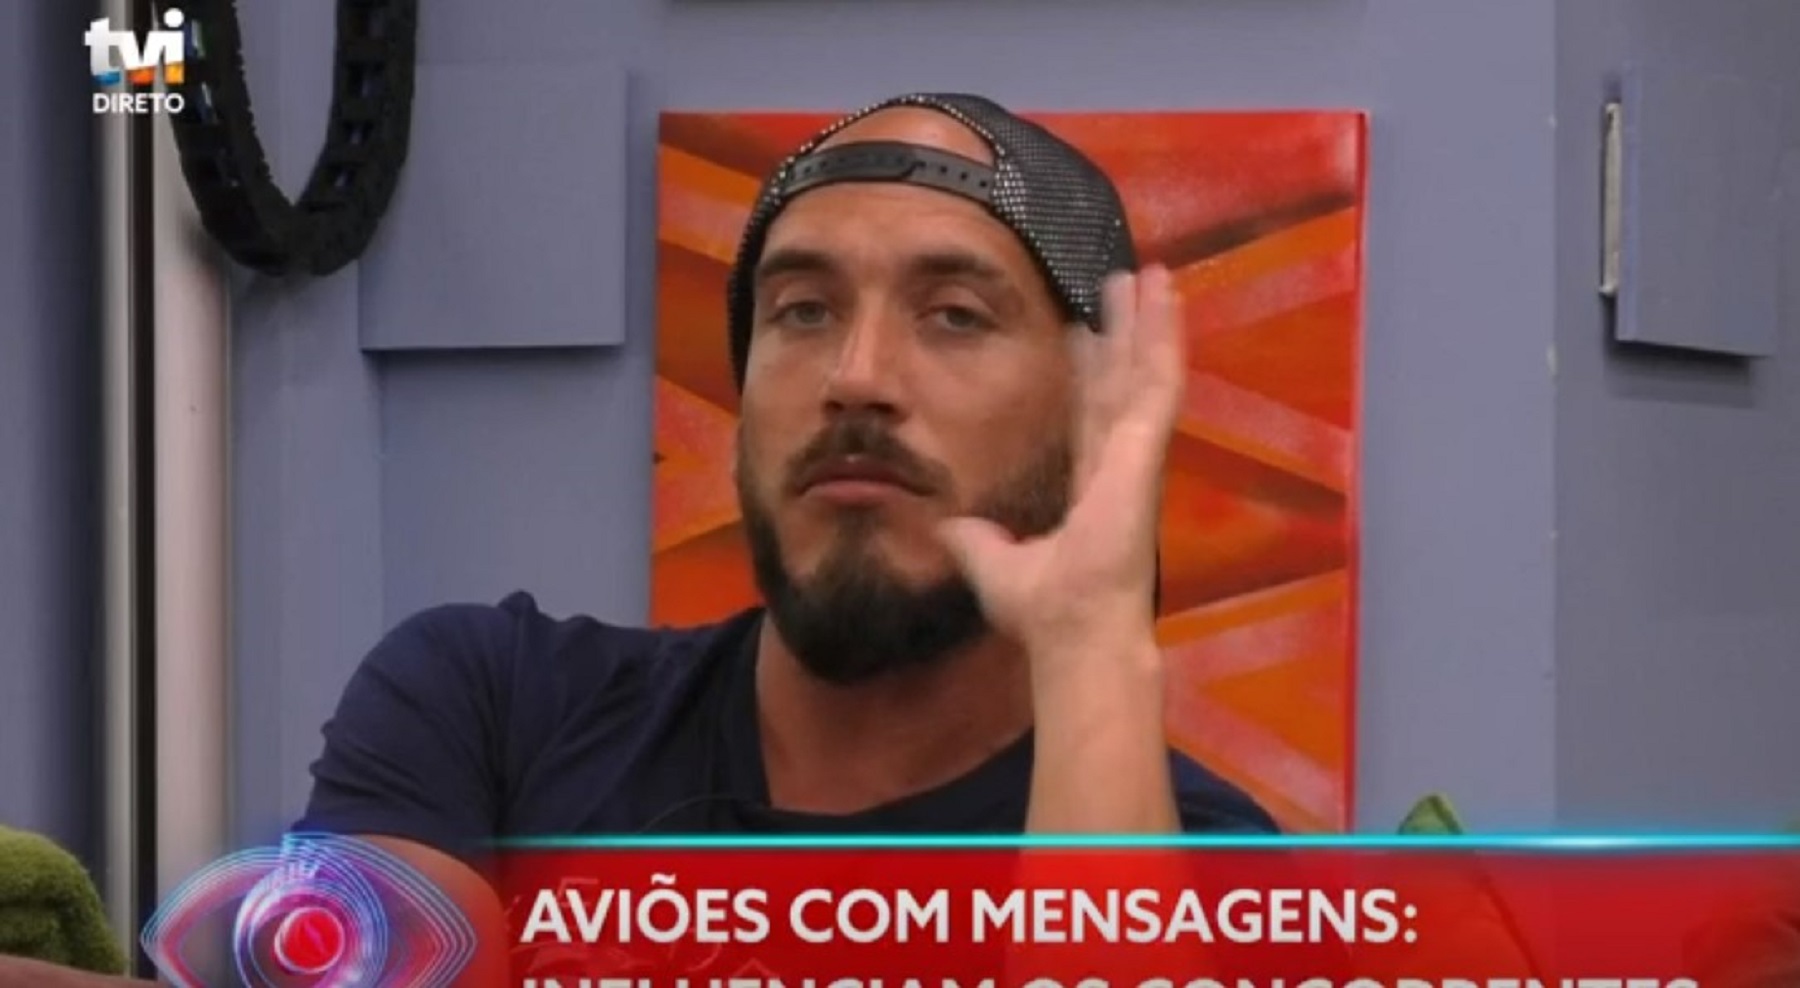 Daniel Monteiro 'Big Brother 2020'. Daniel Monteiro Reage A Críticas E Compara-Se Com Cristiano Ronaldo